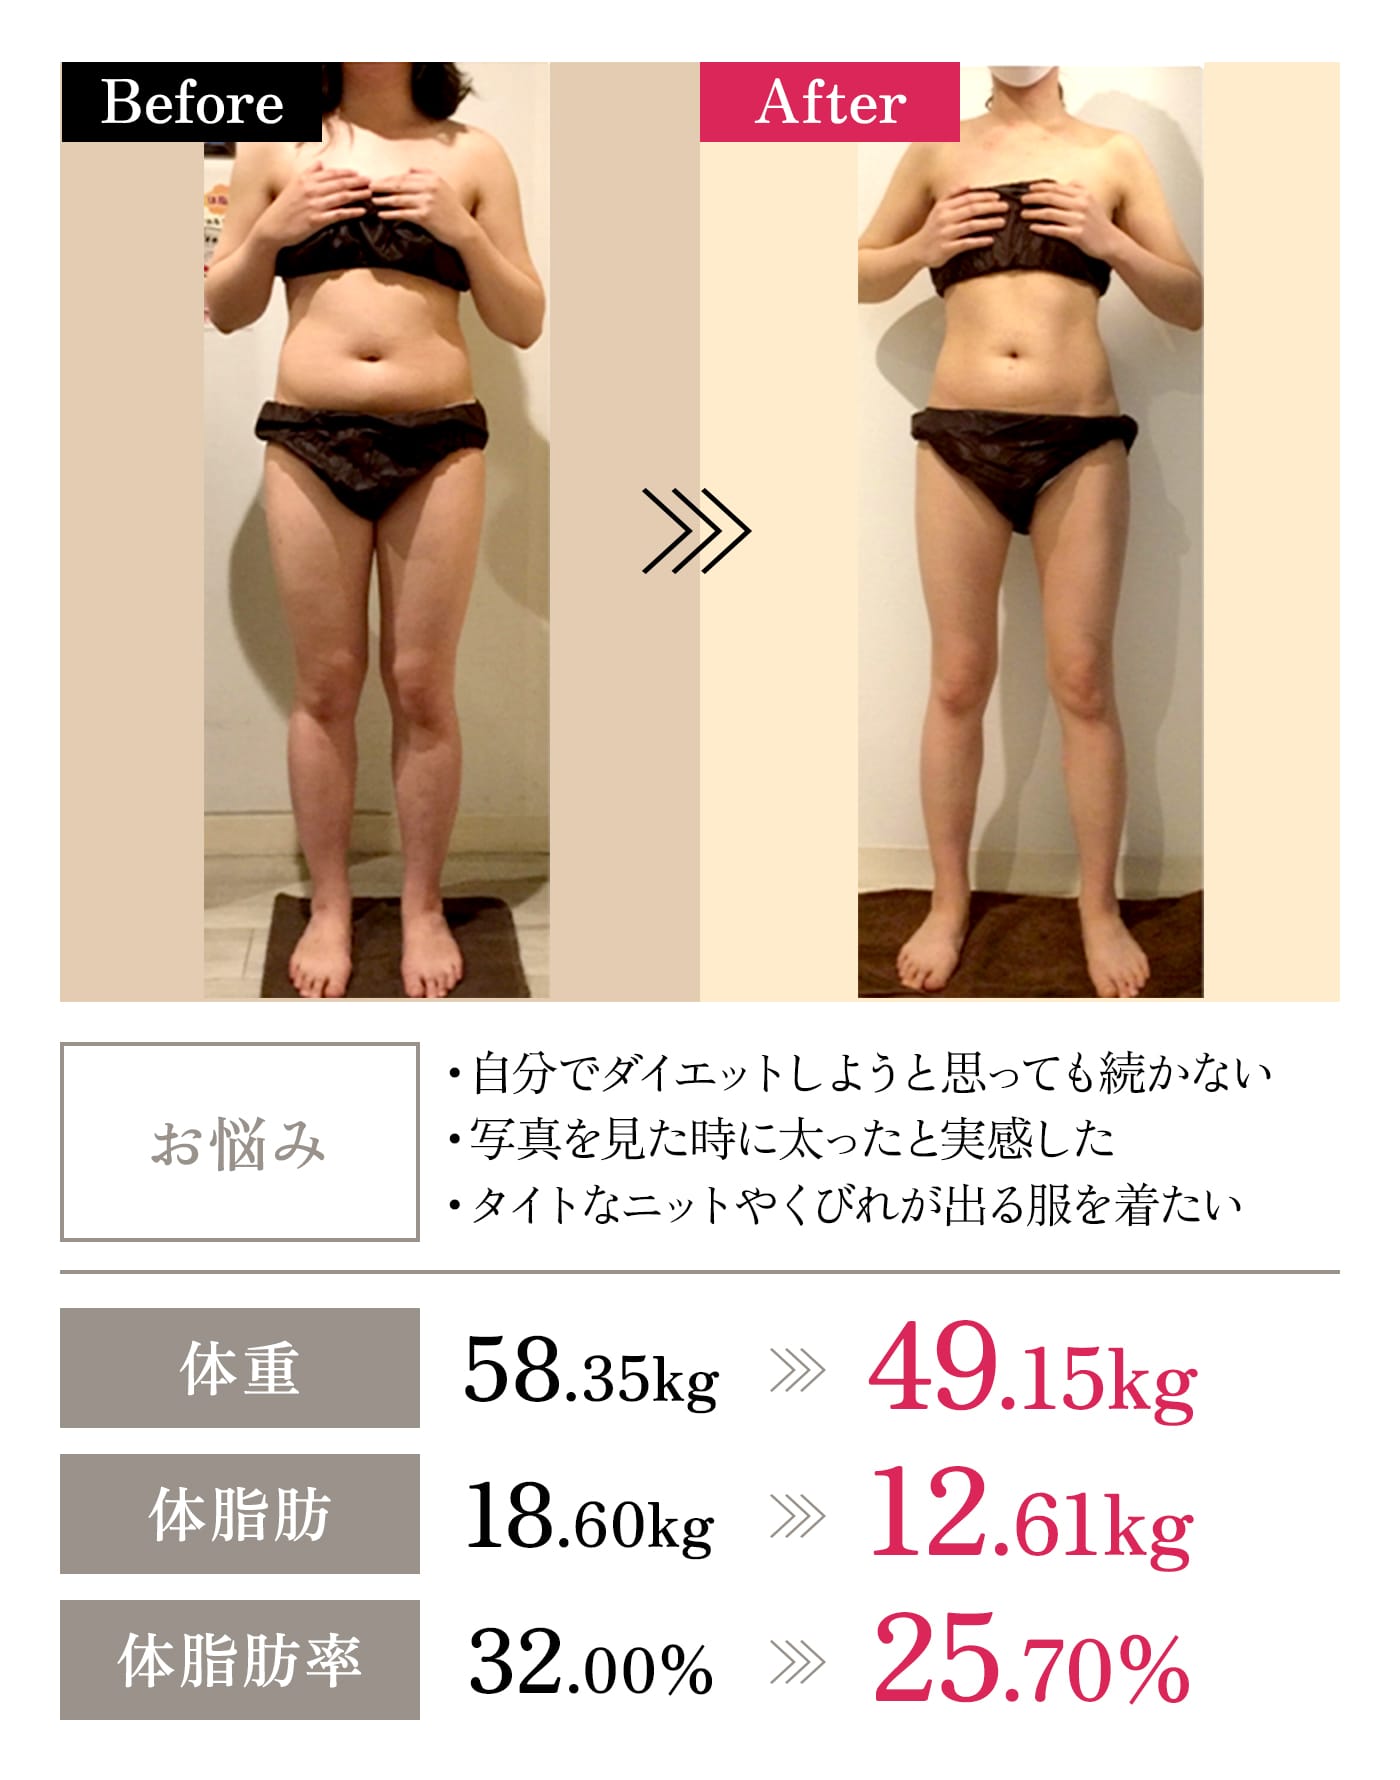 Before→After｜「お悩み」・自分でダイエットしようと思っても続かない・写真を見た時に太ったと実感した・タイトなニットやくびれが出る服を着たい｜「体重」58.35kg→49.15kg｜「体脂肪」18.60kg→12.61kg｜「体脂肪率」32.00%→25.70%